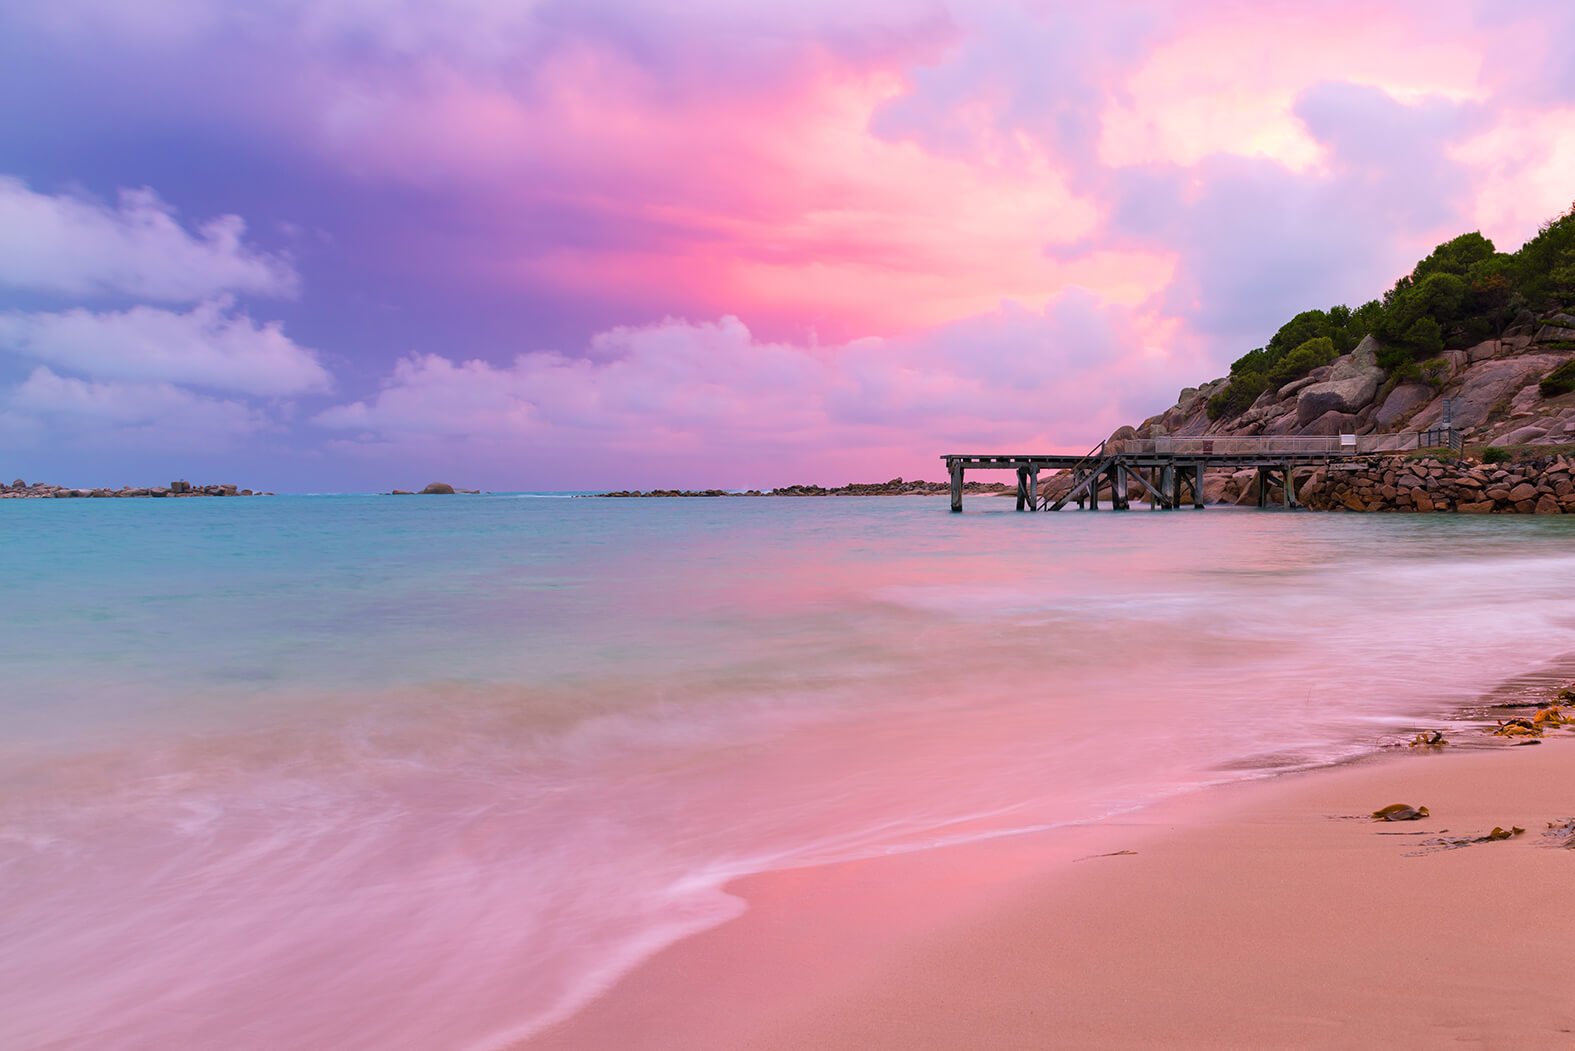 Пляж Пантай мера с розовым песком